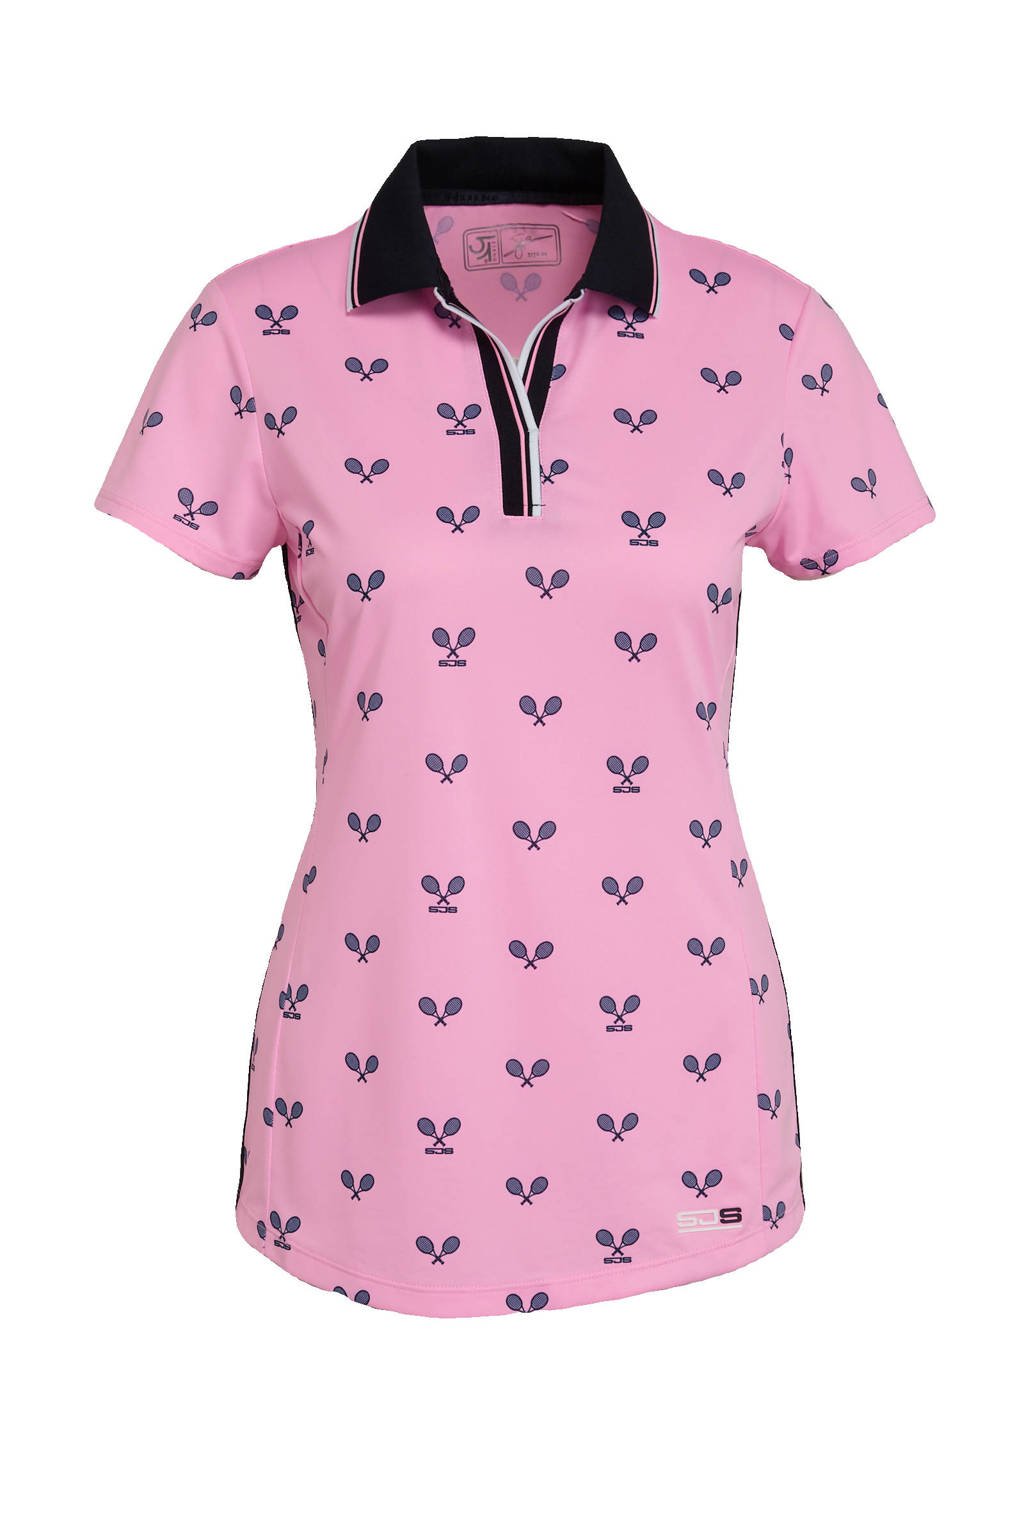 Roze en zwarte dames Sjeng Sports sportpolo Brenda van polyester met all over print en korte mouwen